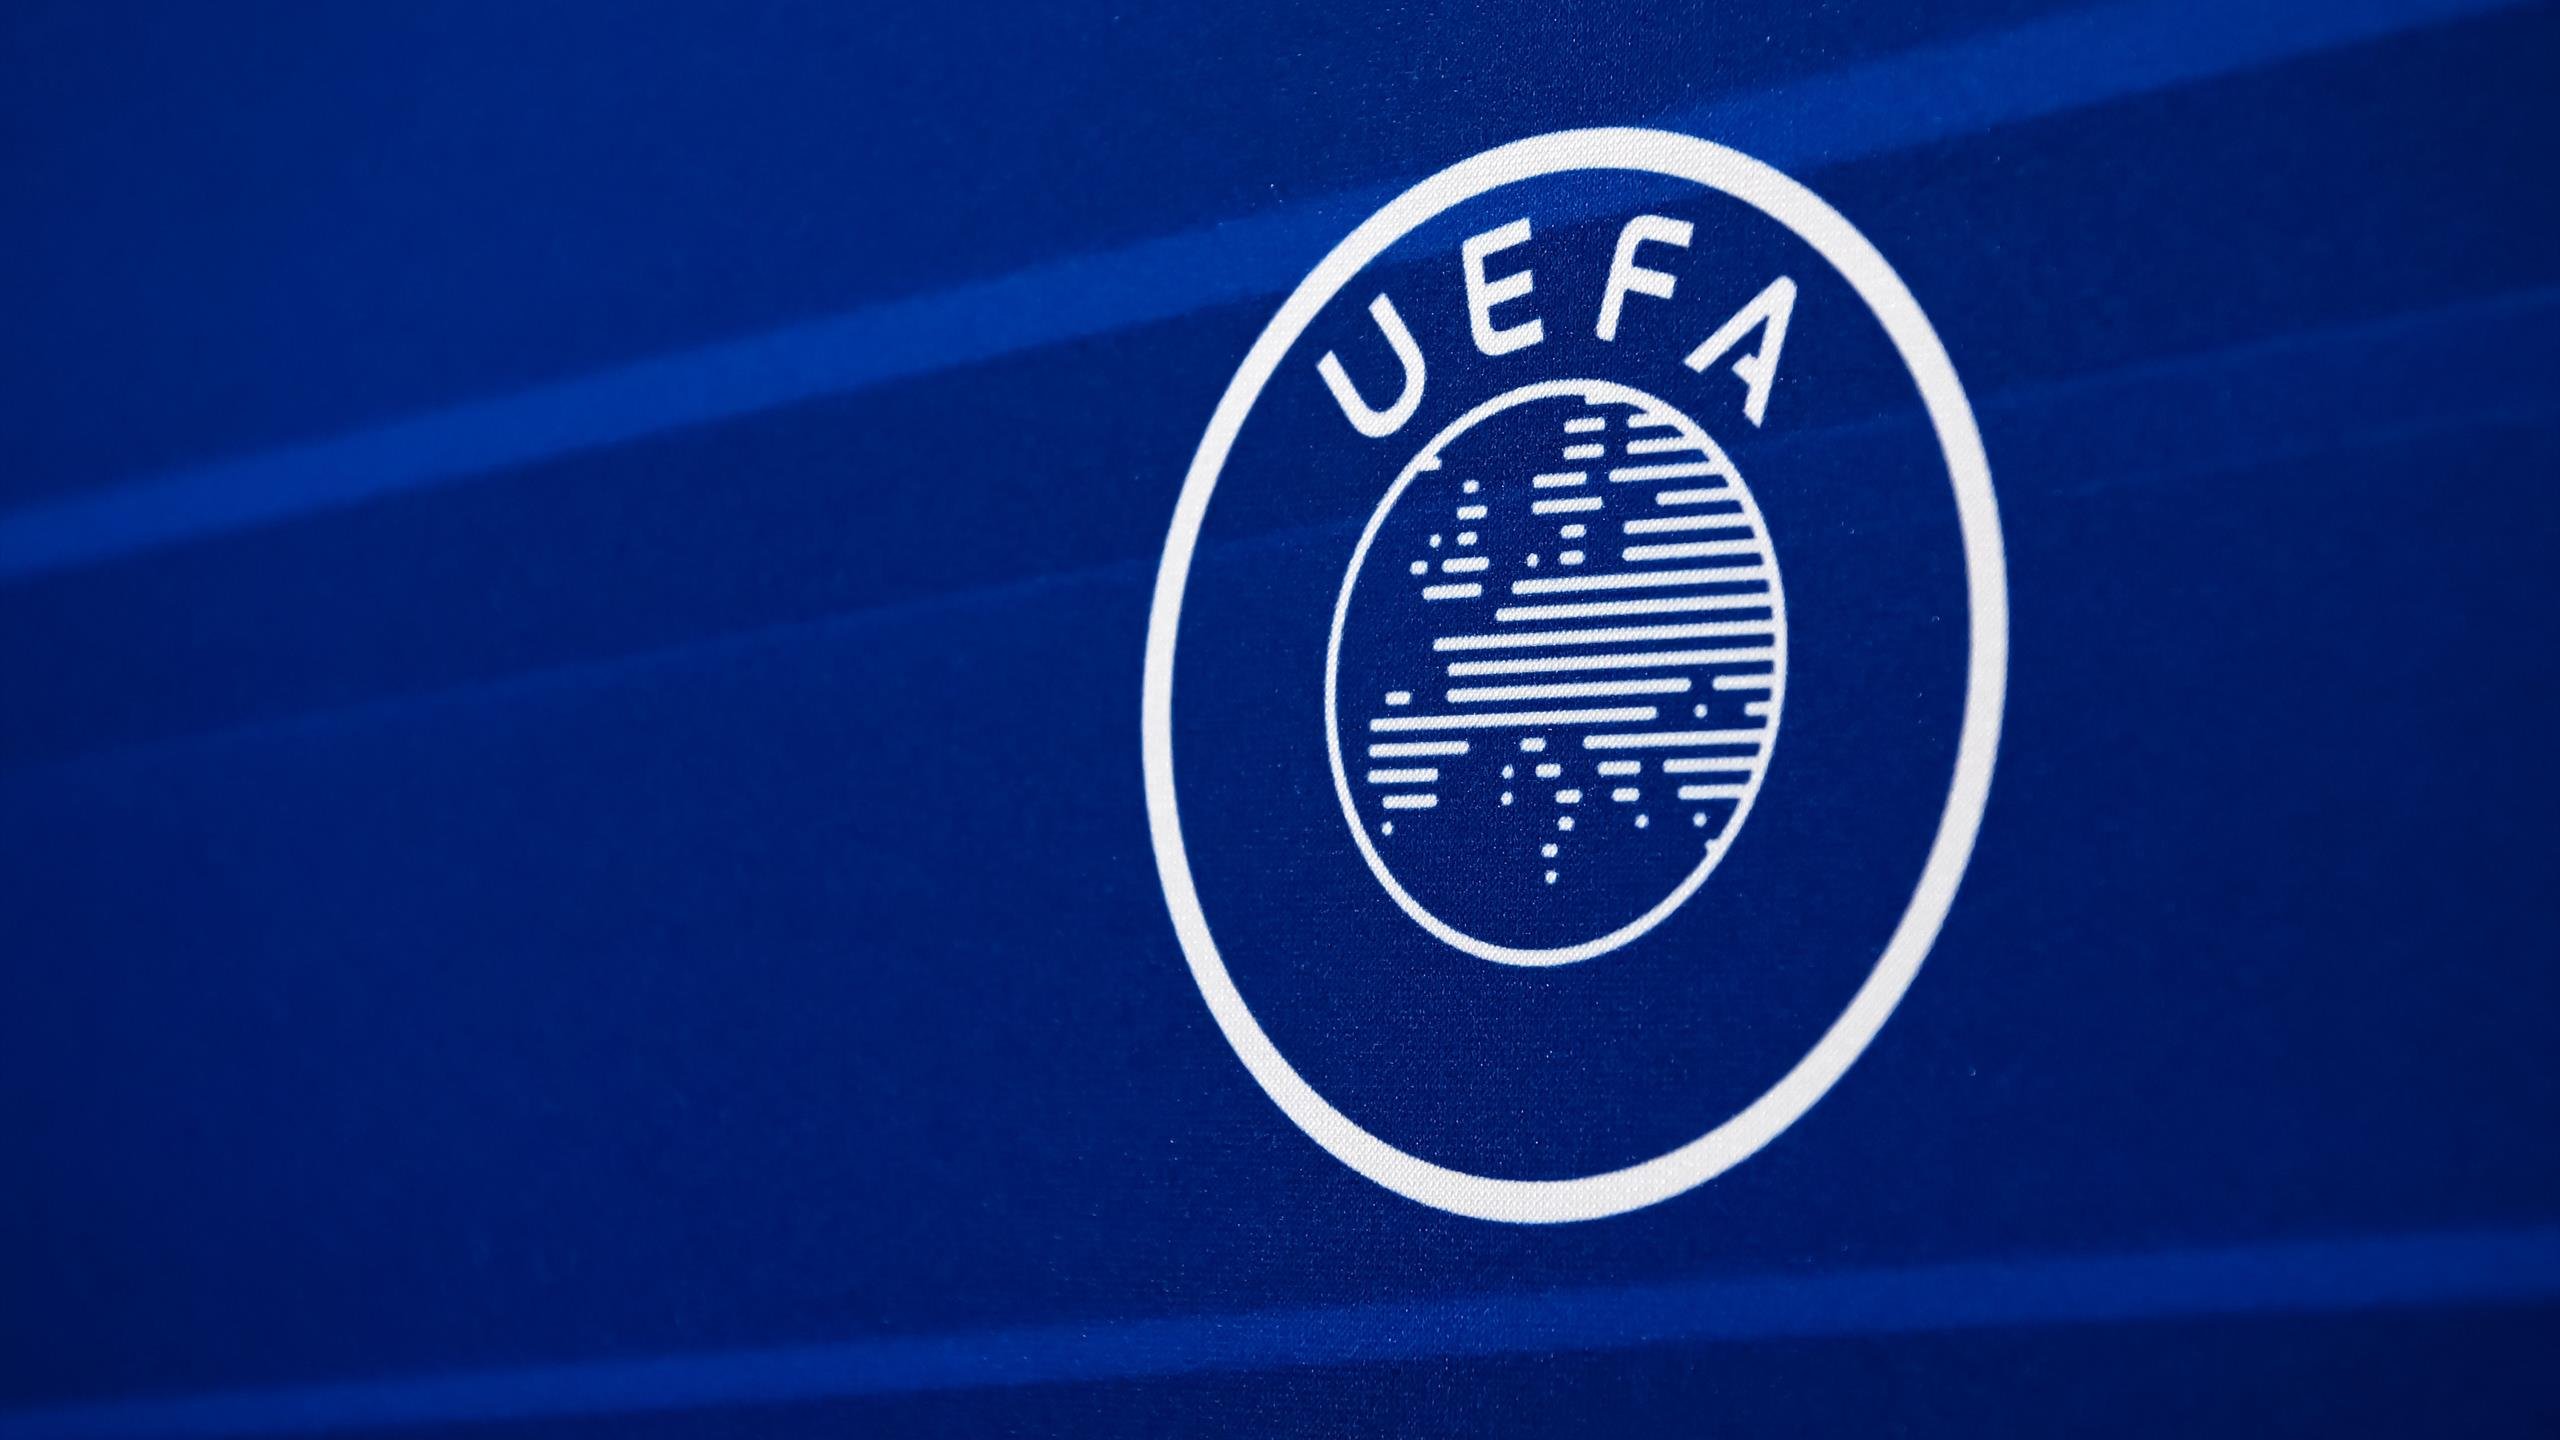  UEFA a amendat federaţia bosniacă după meciurile Bosniei cu Liechtenstein şi Portugalia